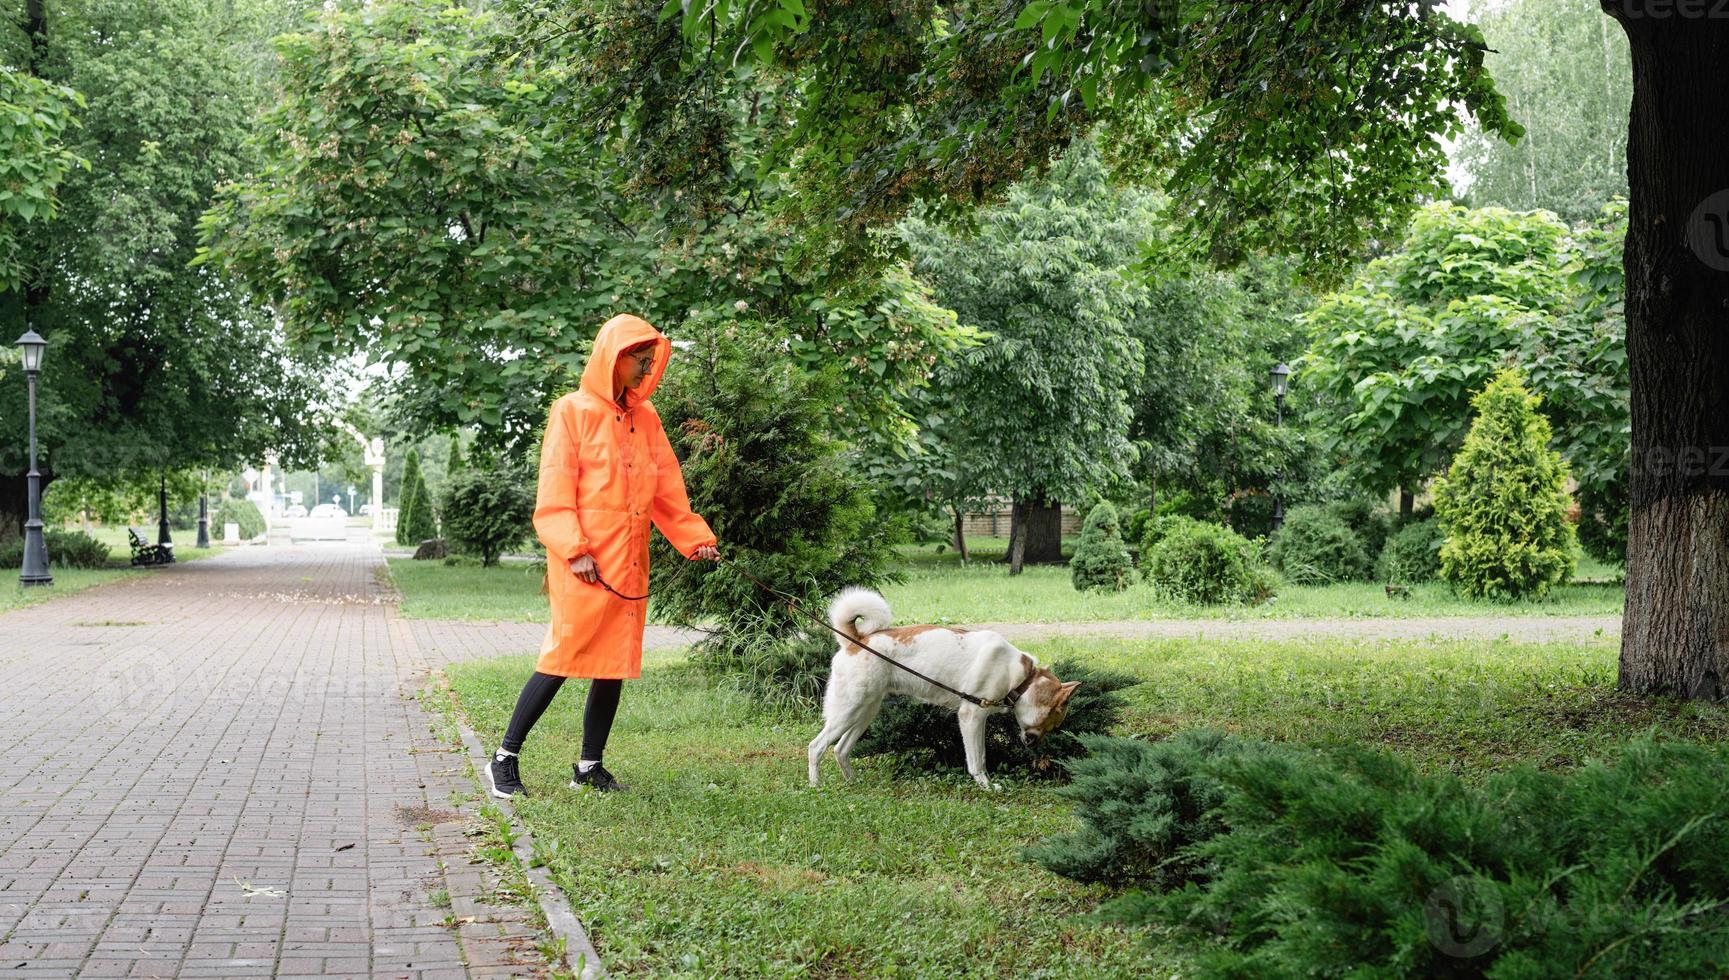 jovem com capa de chuva laranja caminhando com seu cachorro em um parque foto